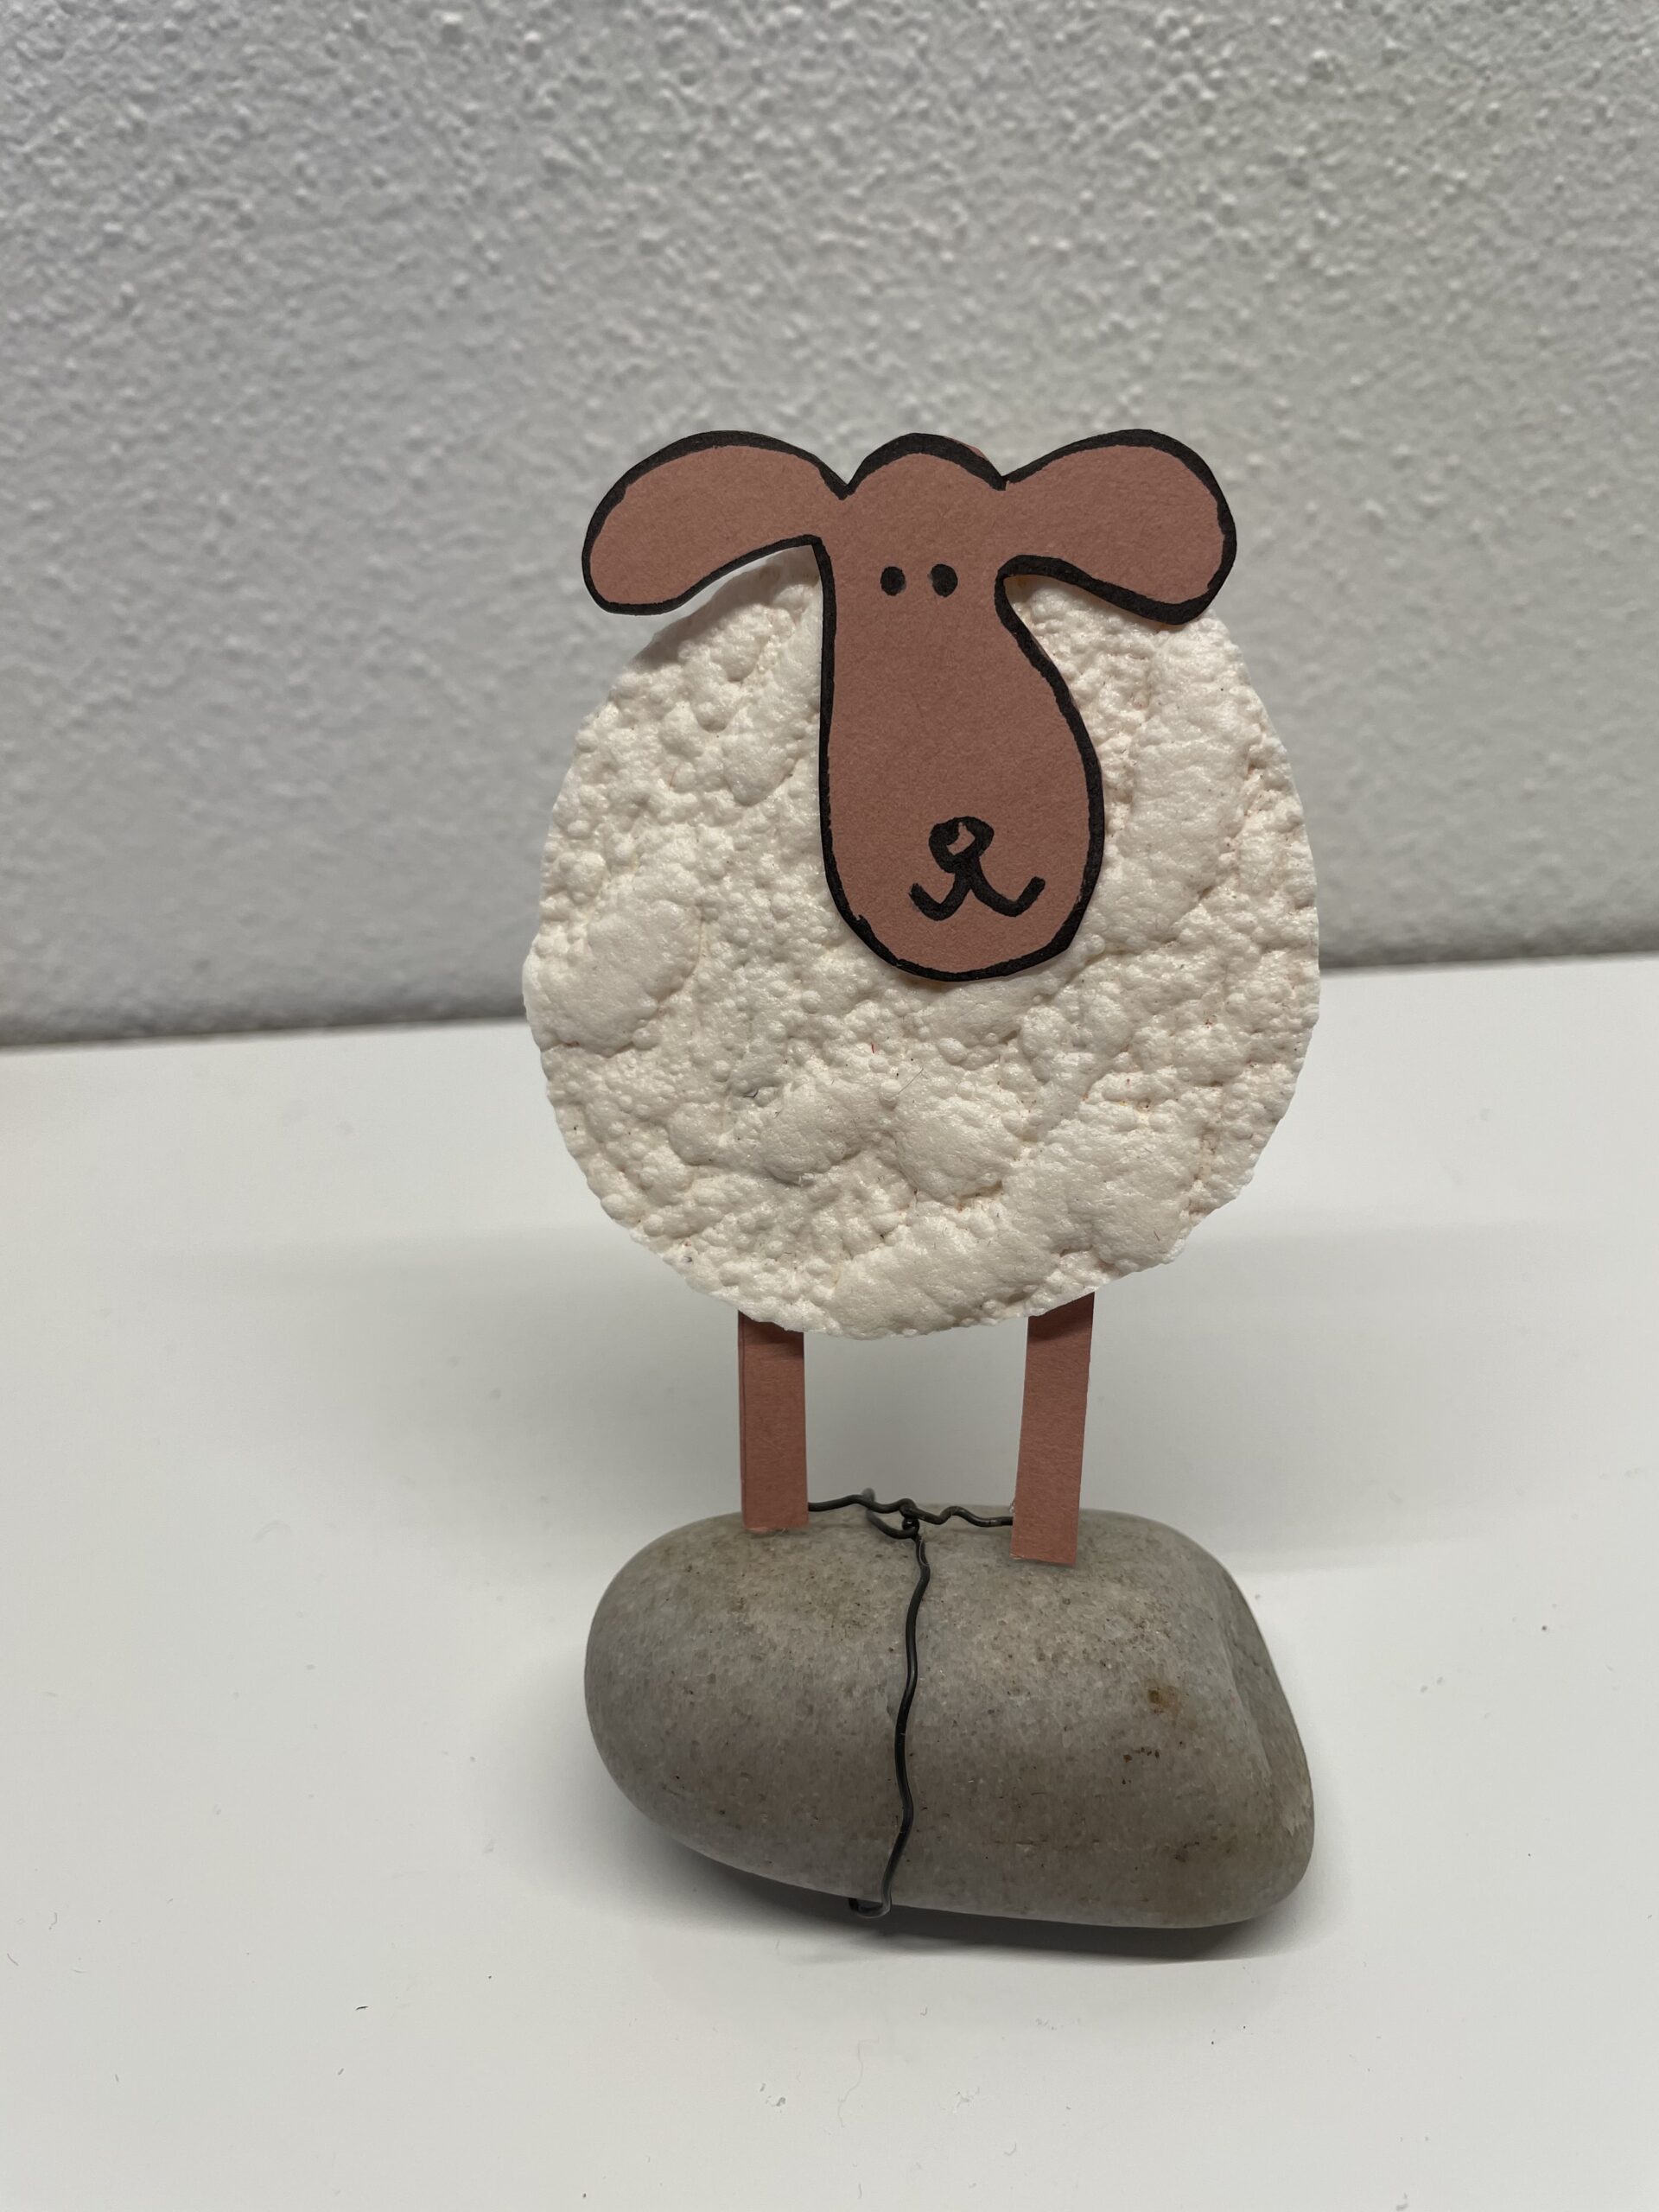 Bild zum Schritt 11 für das Bastel- und DIY-Abenteuer für Kinder: 'Fertig ist das Schaf.'